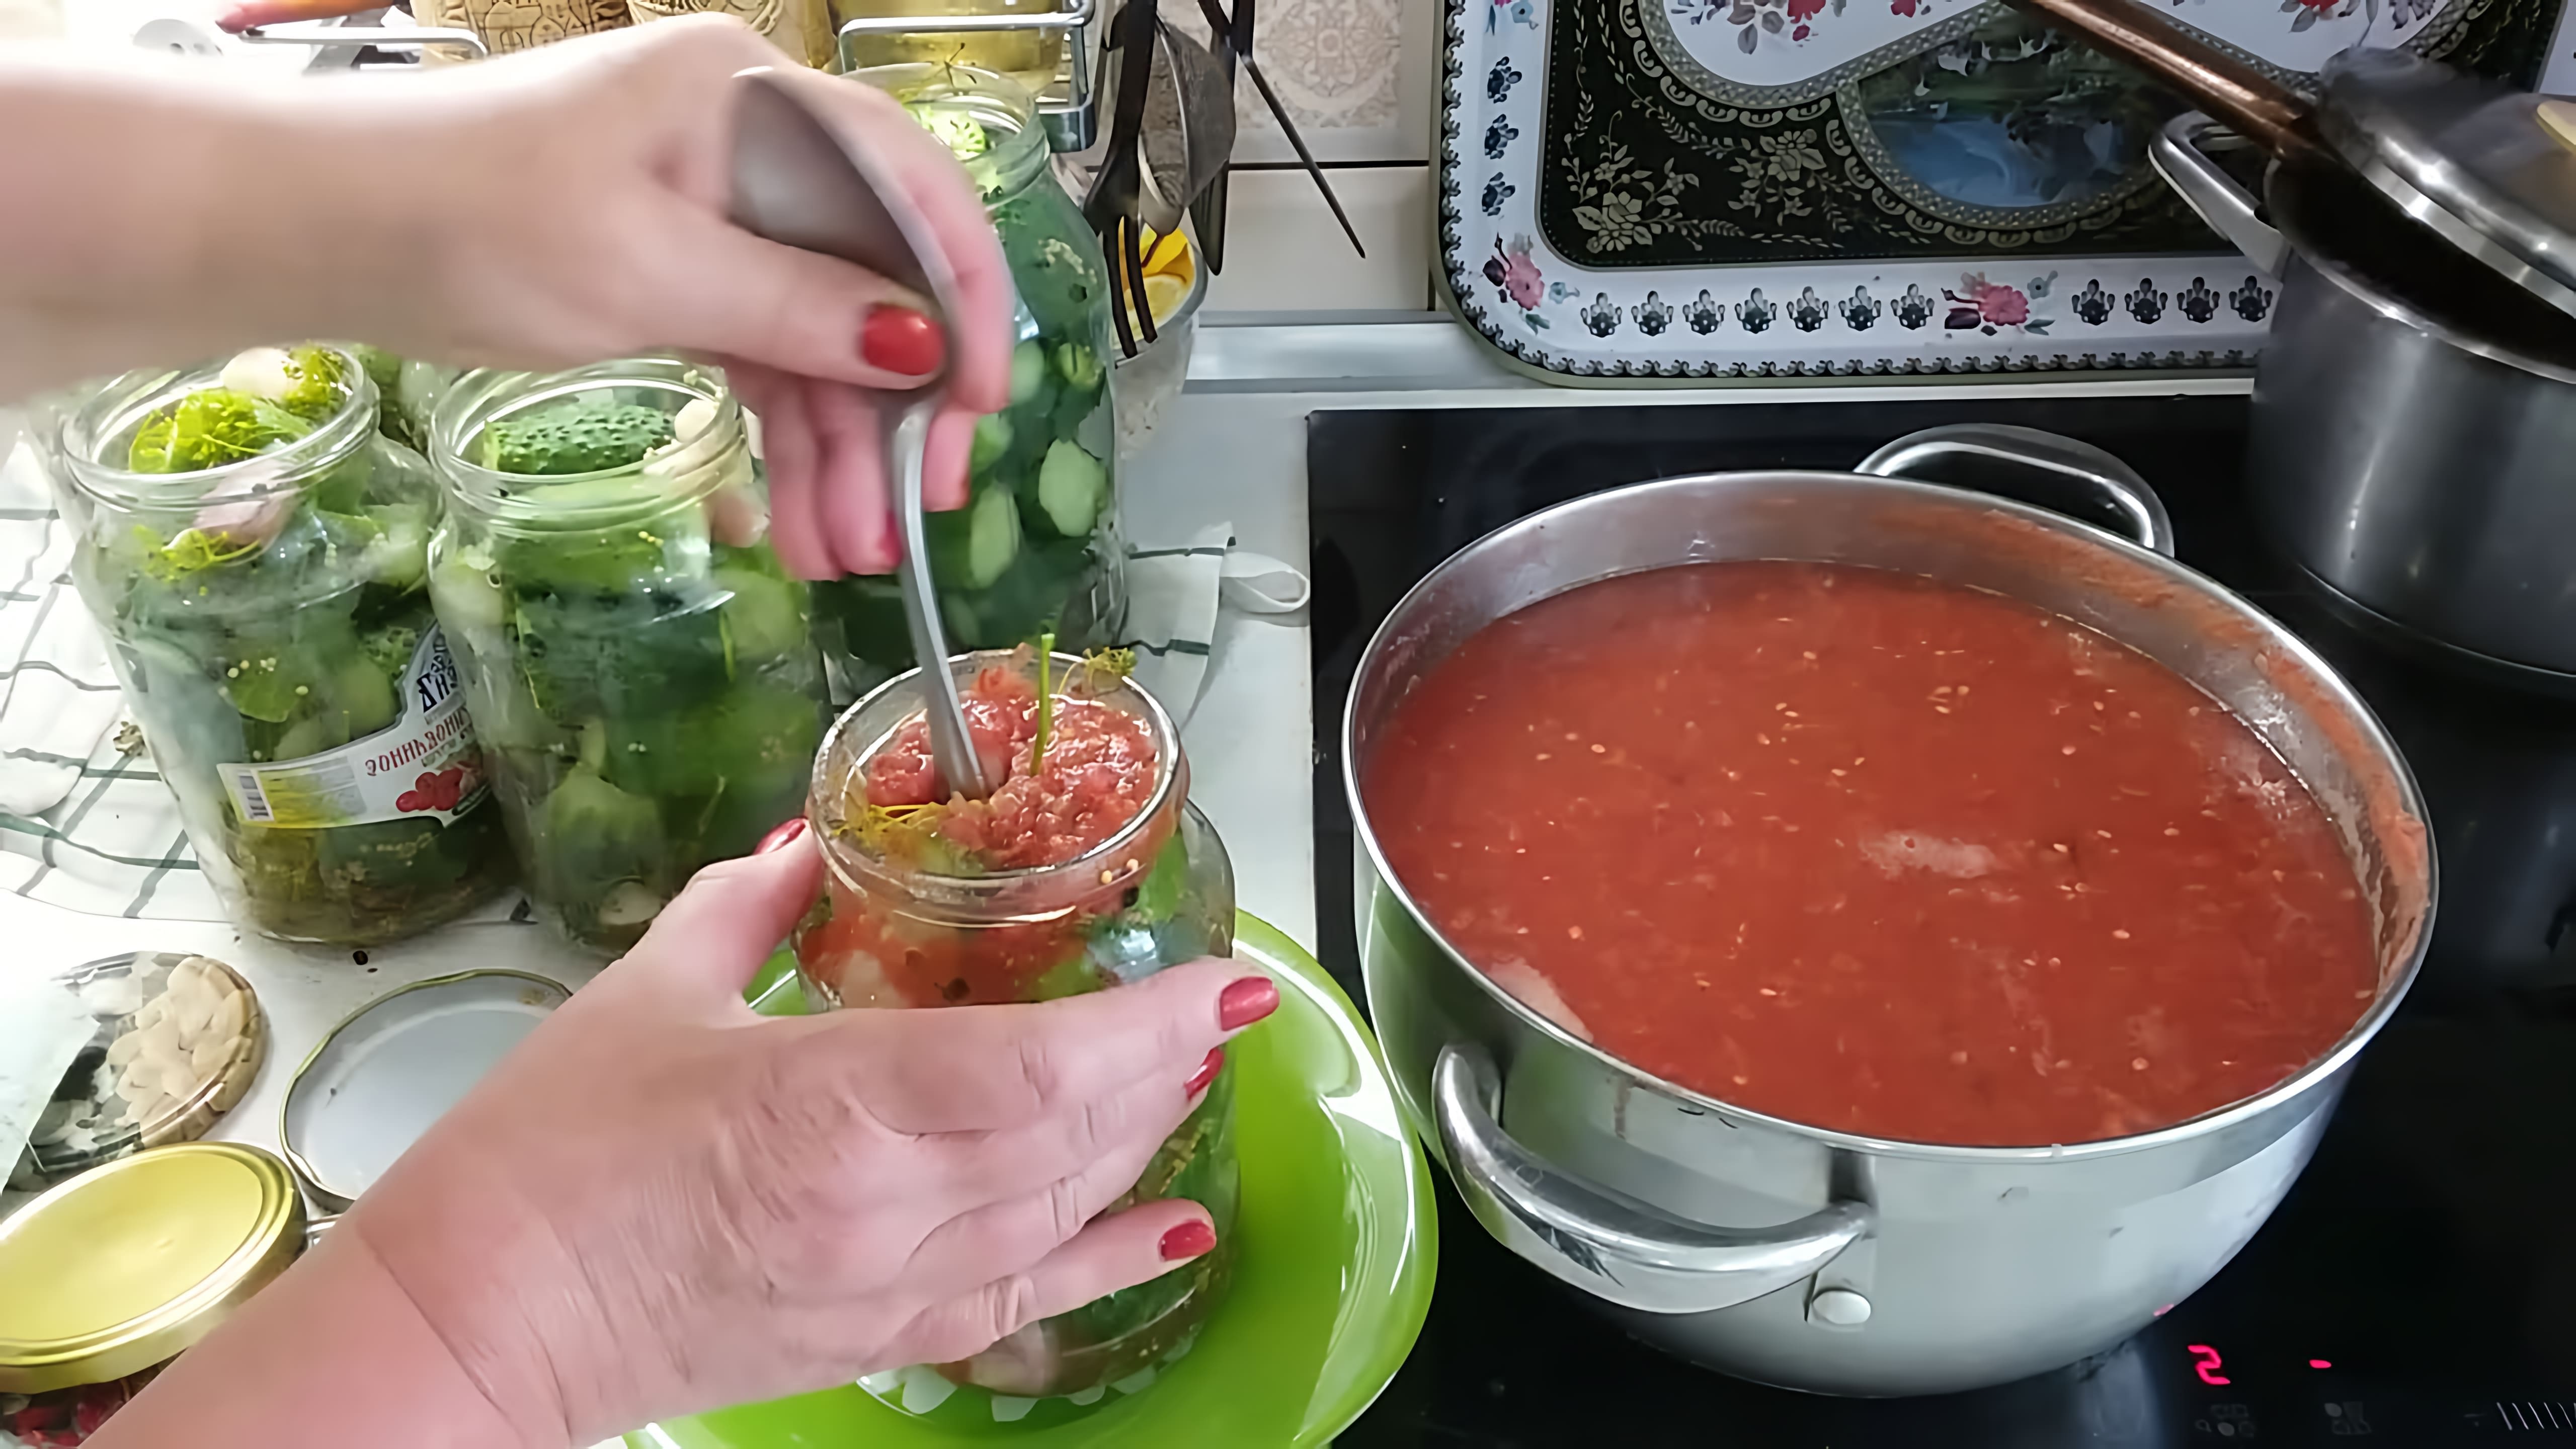 Сегодня делаю огурчики в томатной заливке из свежих помидор. Рецепт прислала моя подписчица. Баночку попробовали и... 